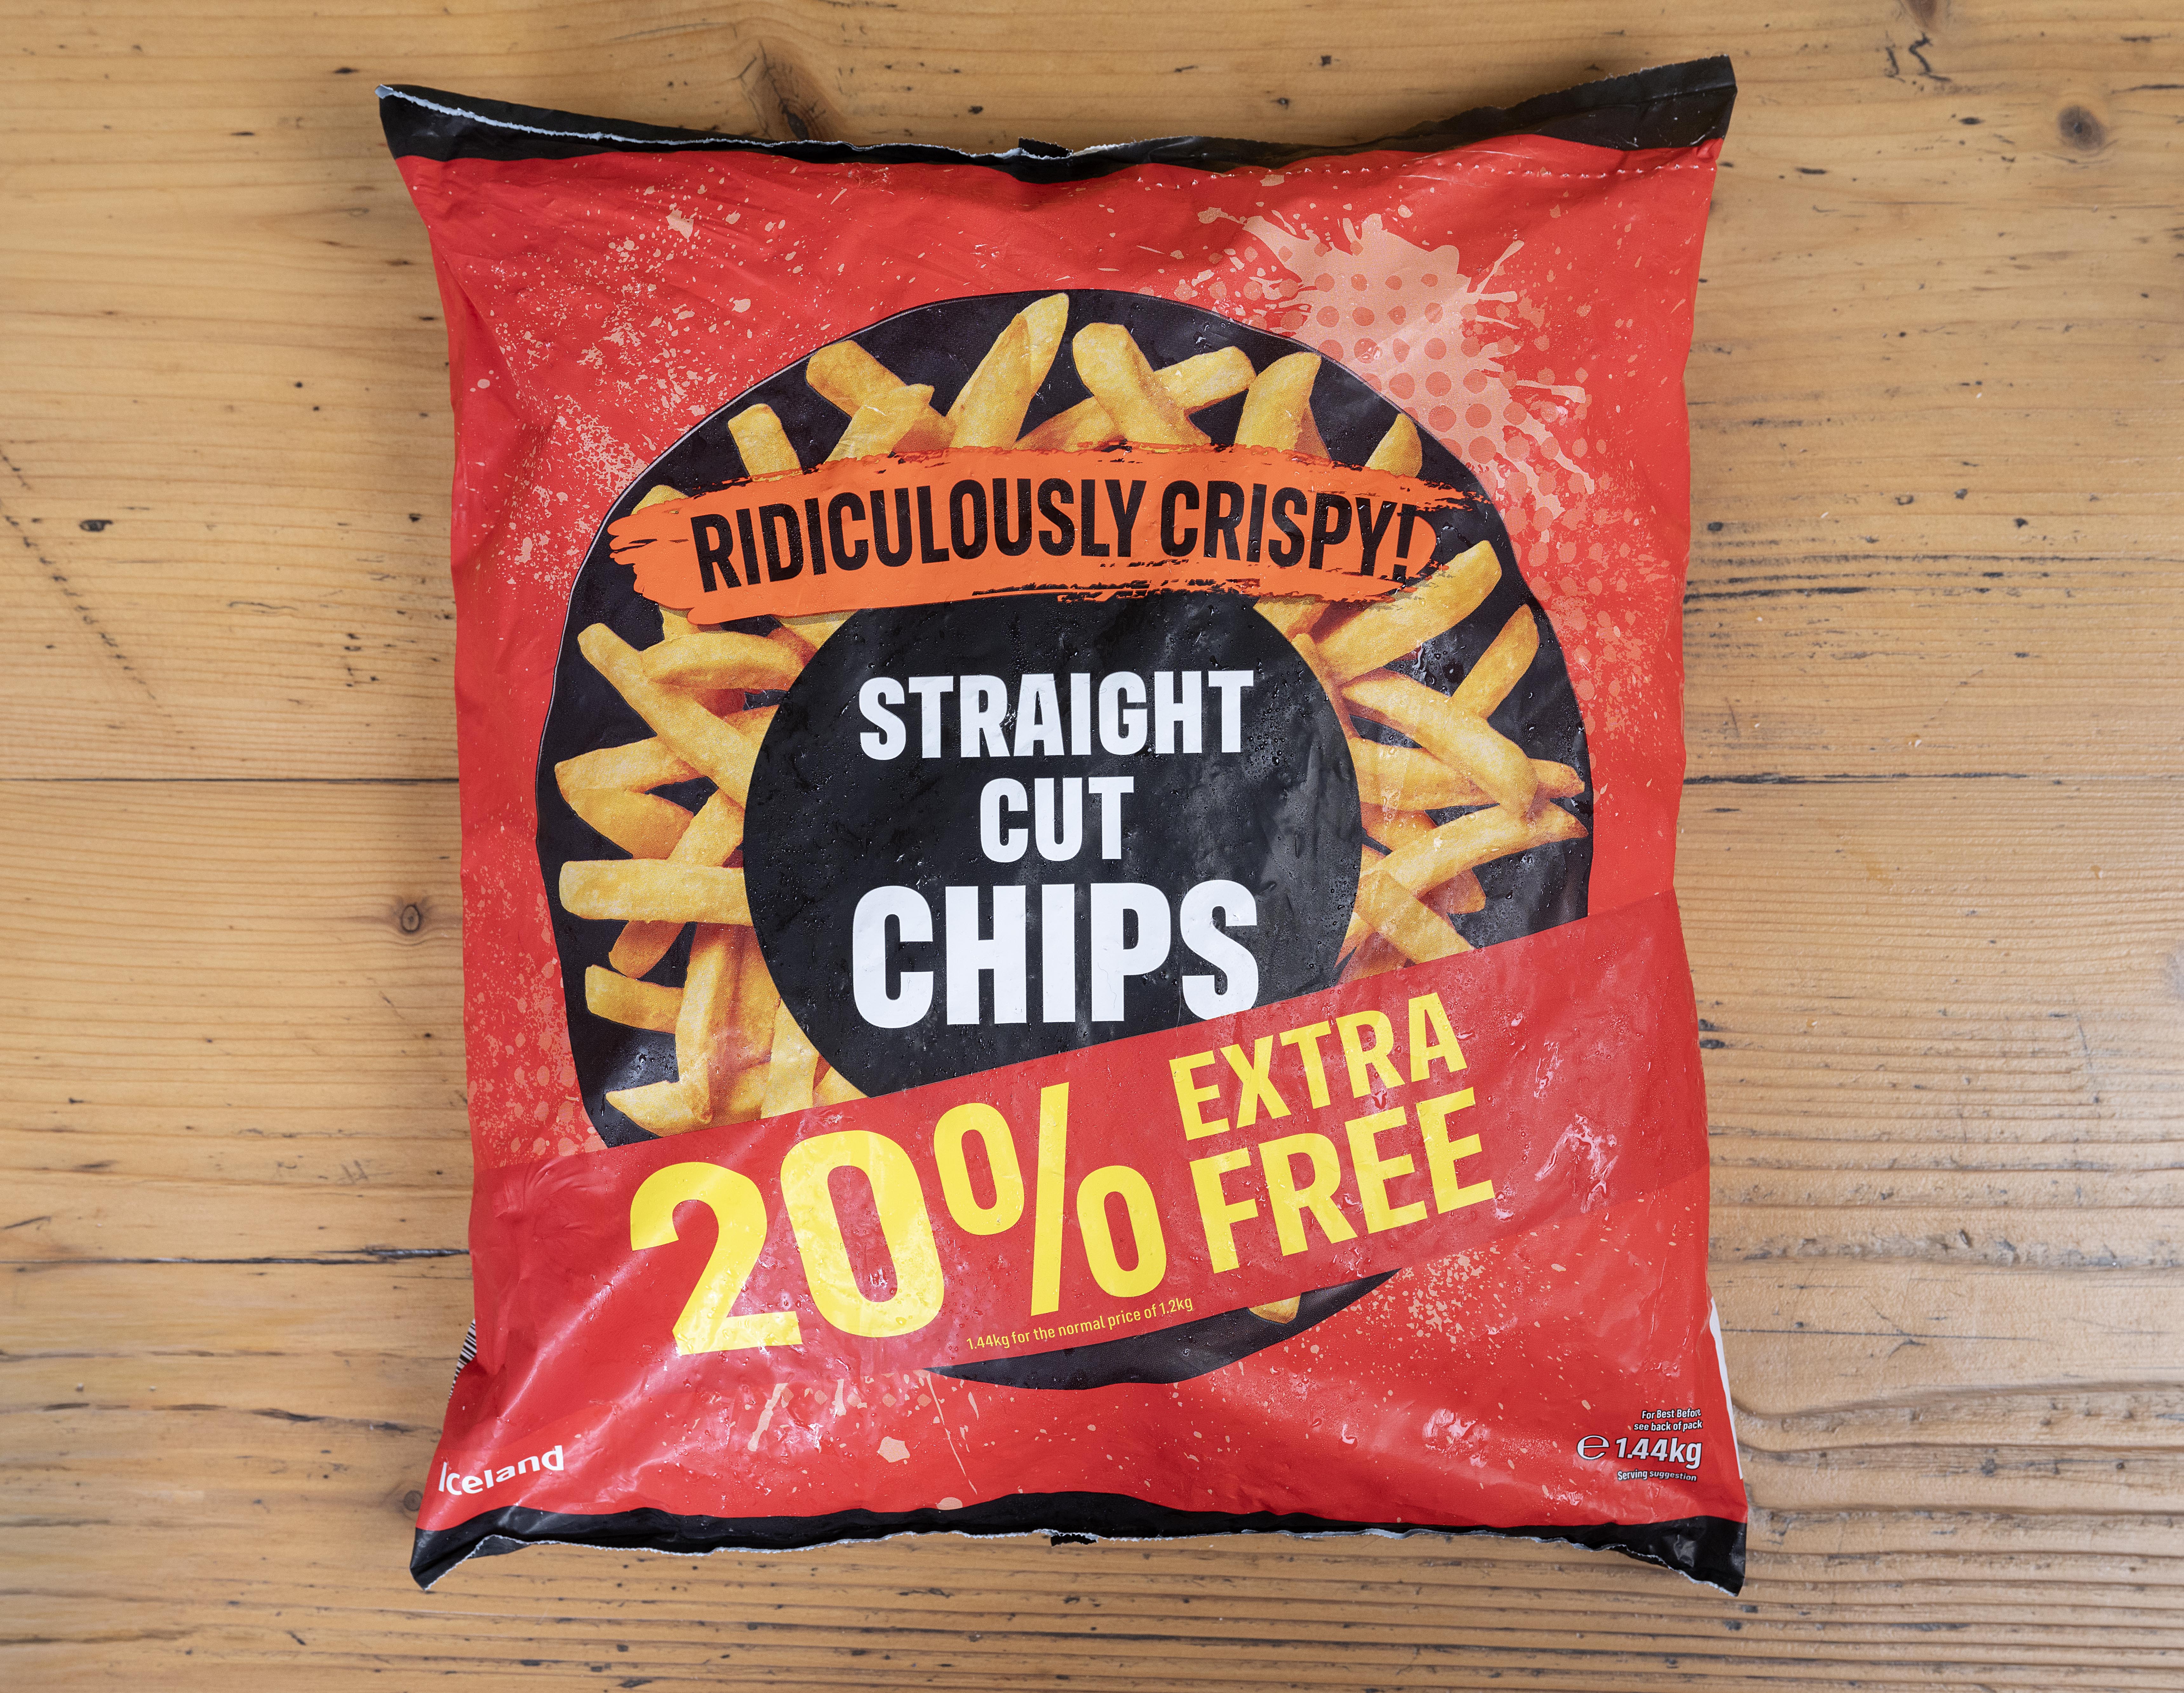 Island Straight Cut Chips sind etwas teurer